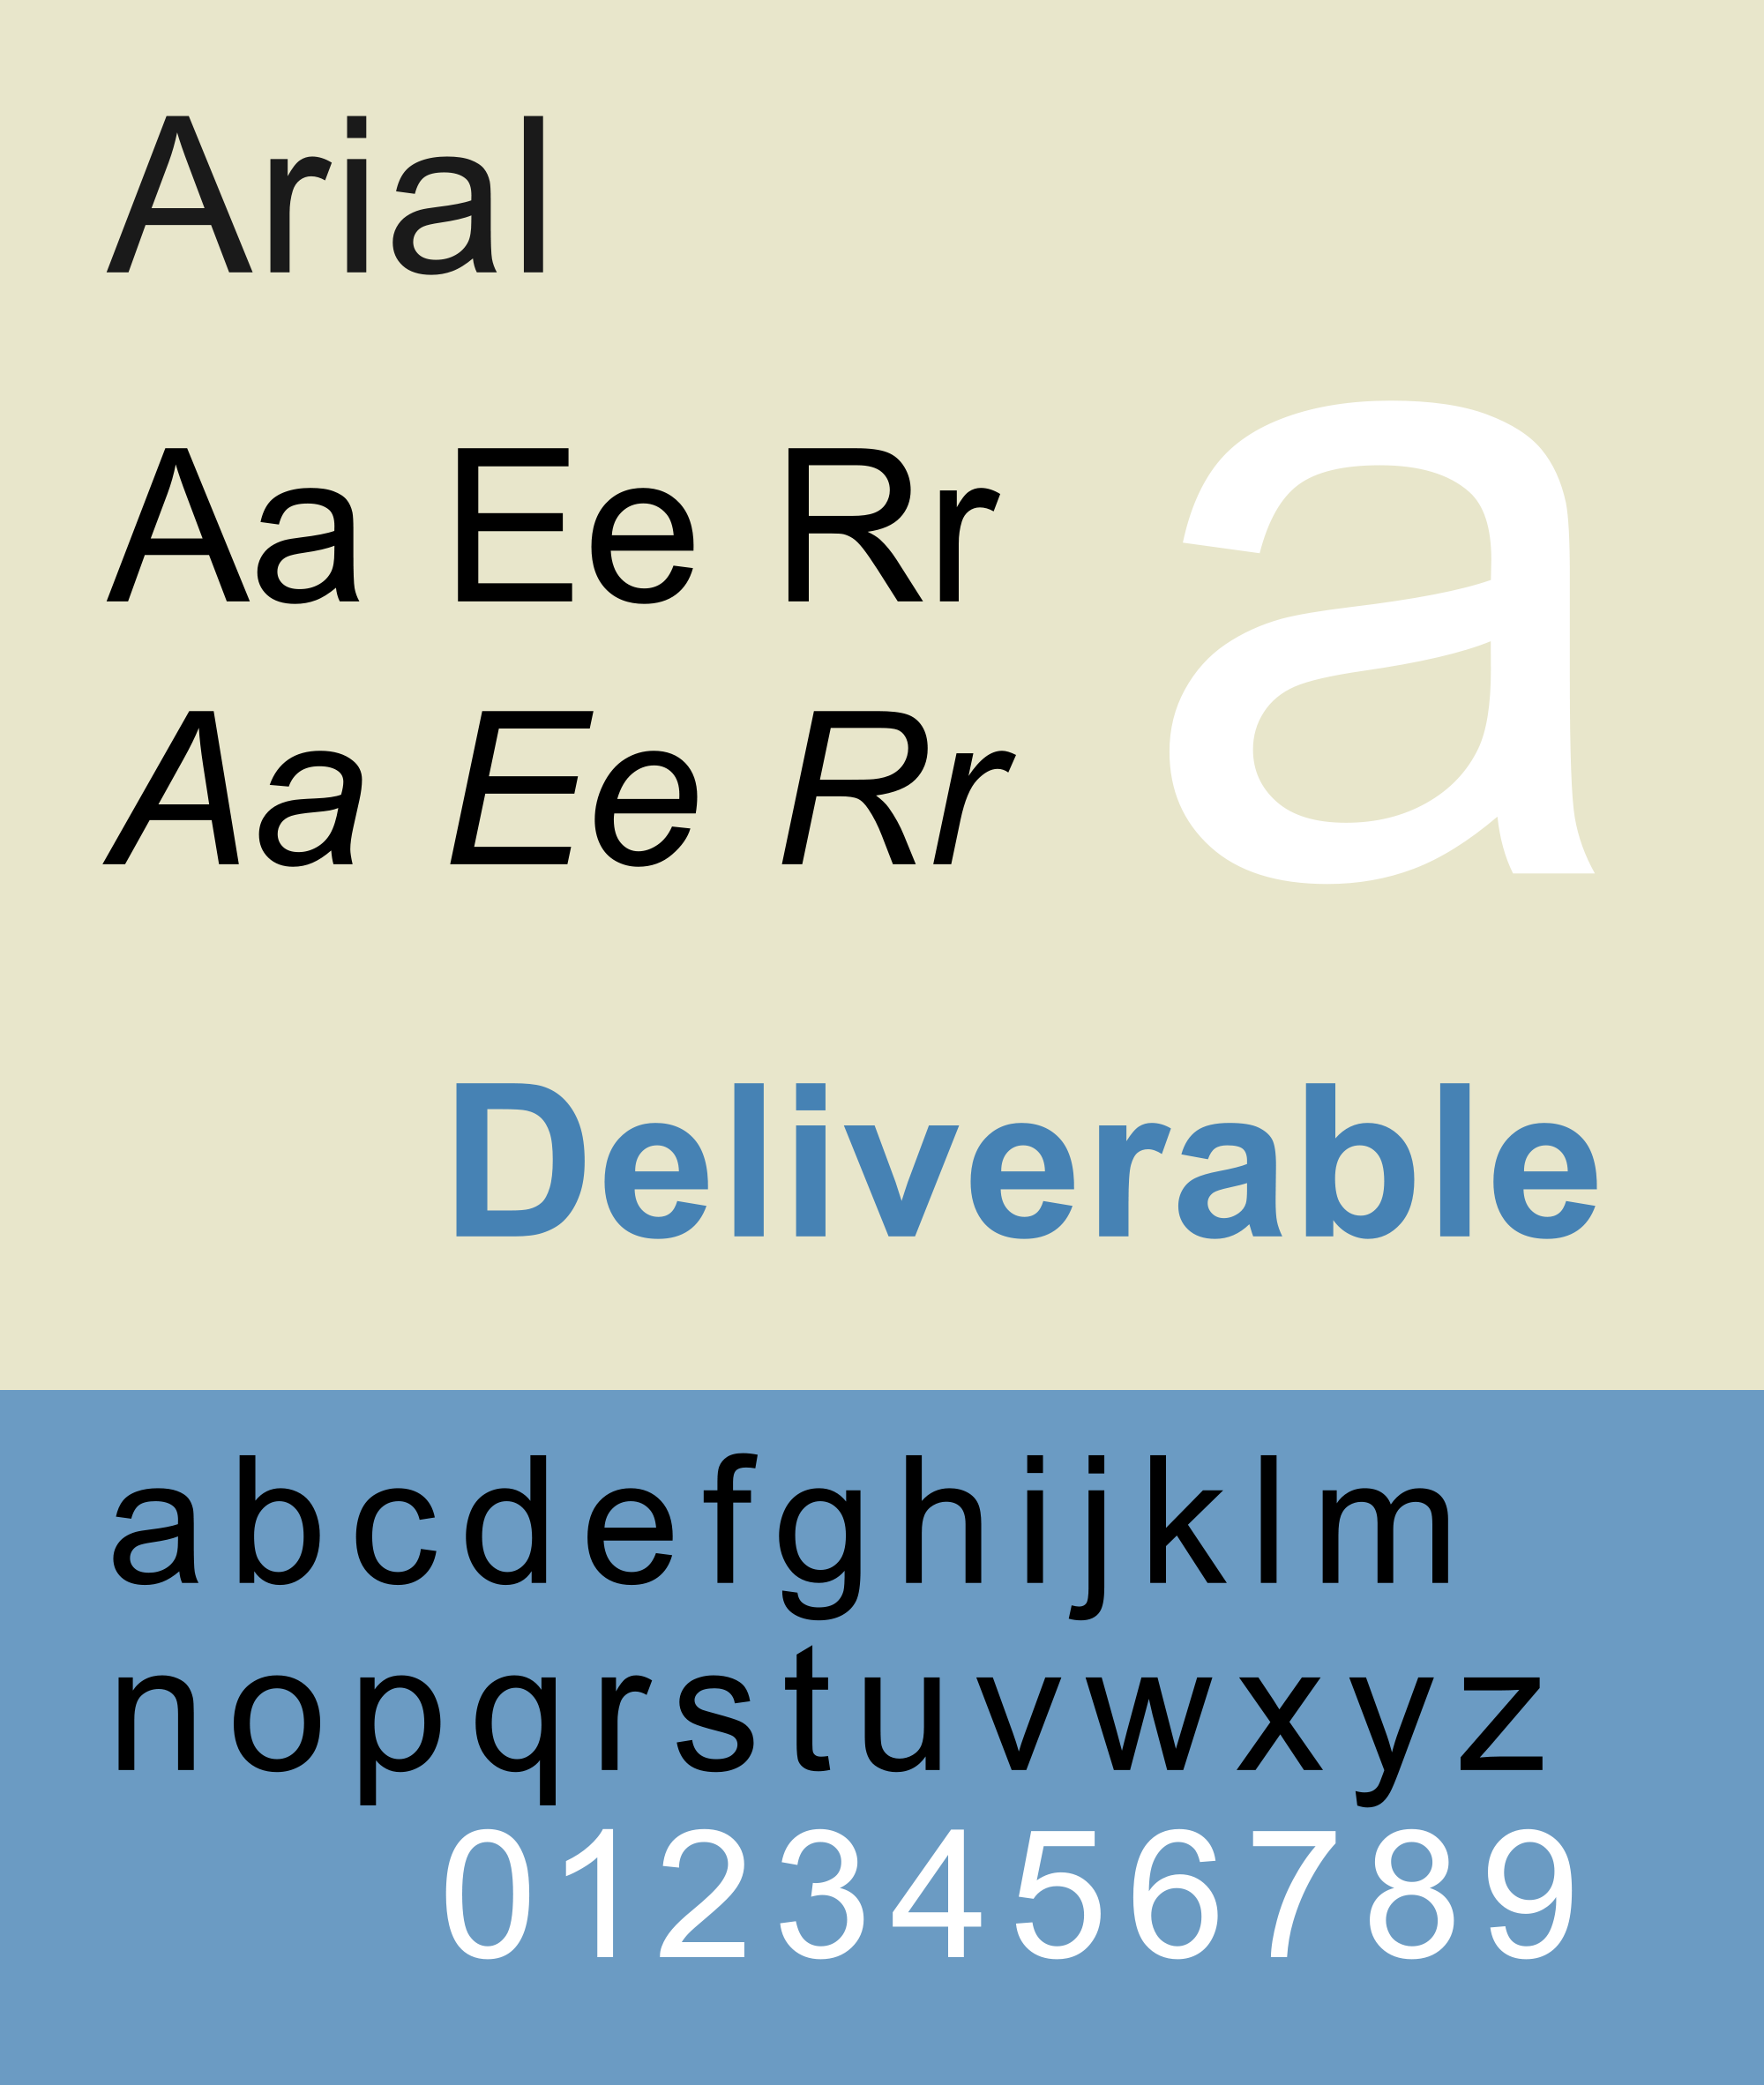 Las tipografías más utilizadas en publicidad: Arial